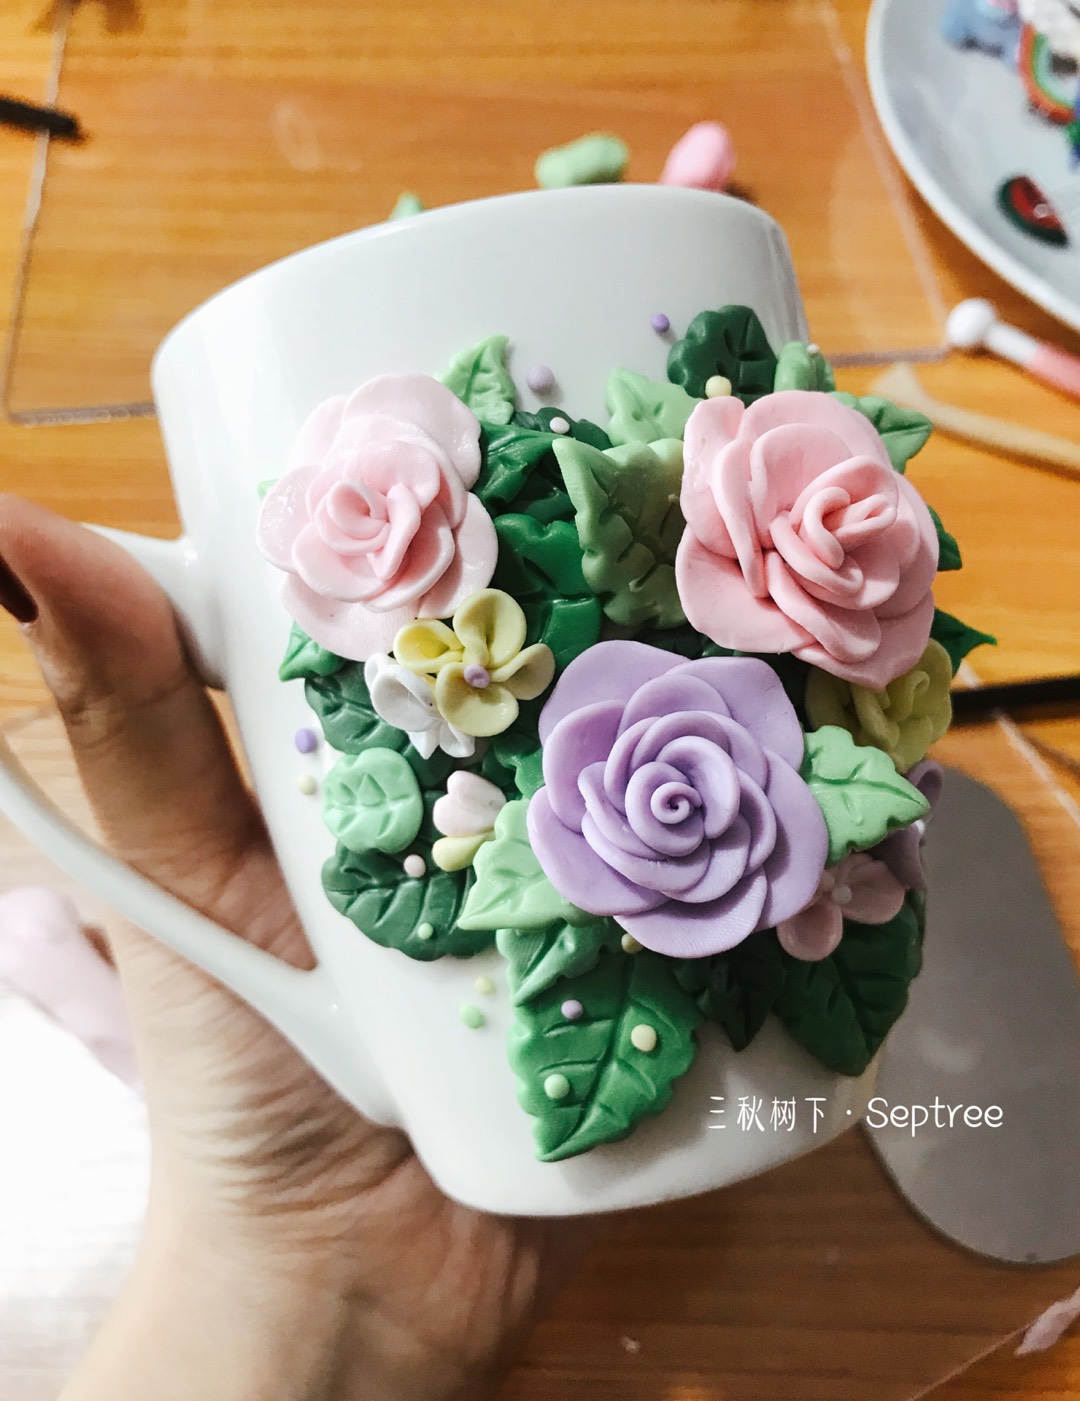 软陶杯的制作方法比较简单，需要耐心和色彩搭配的能力，初学者可以模仿本教程的配色和花型